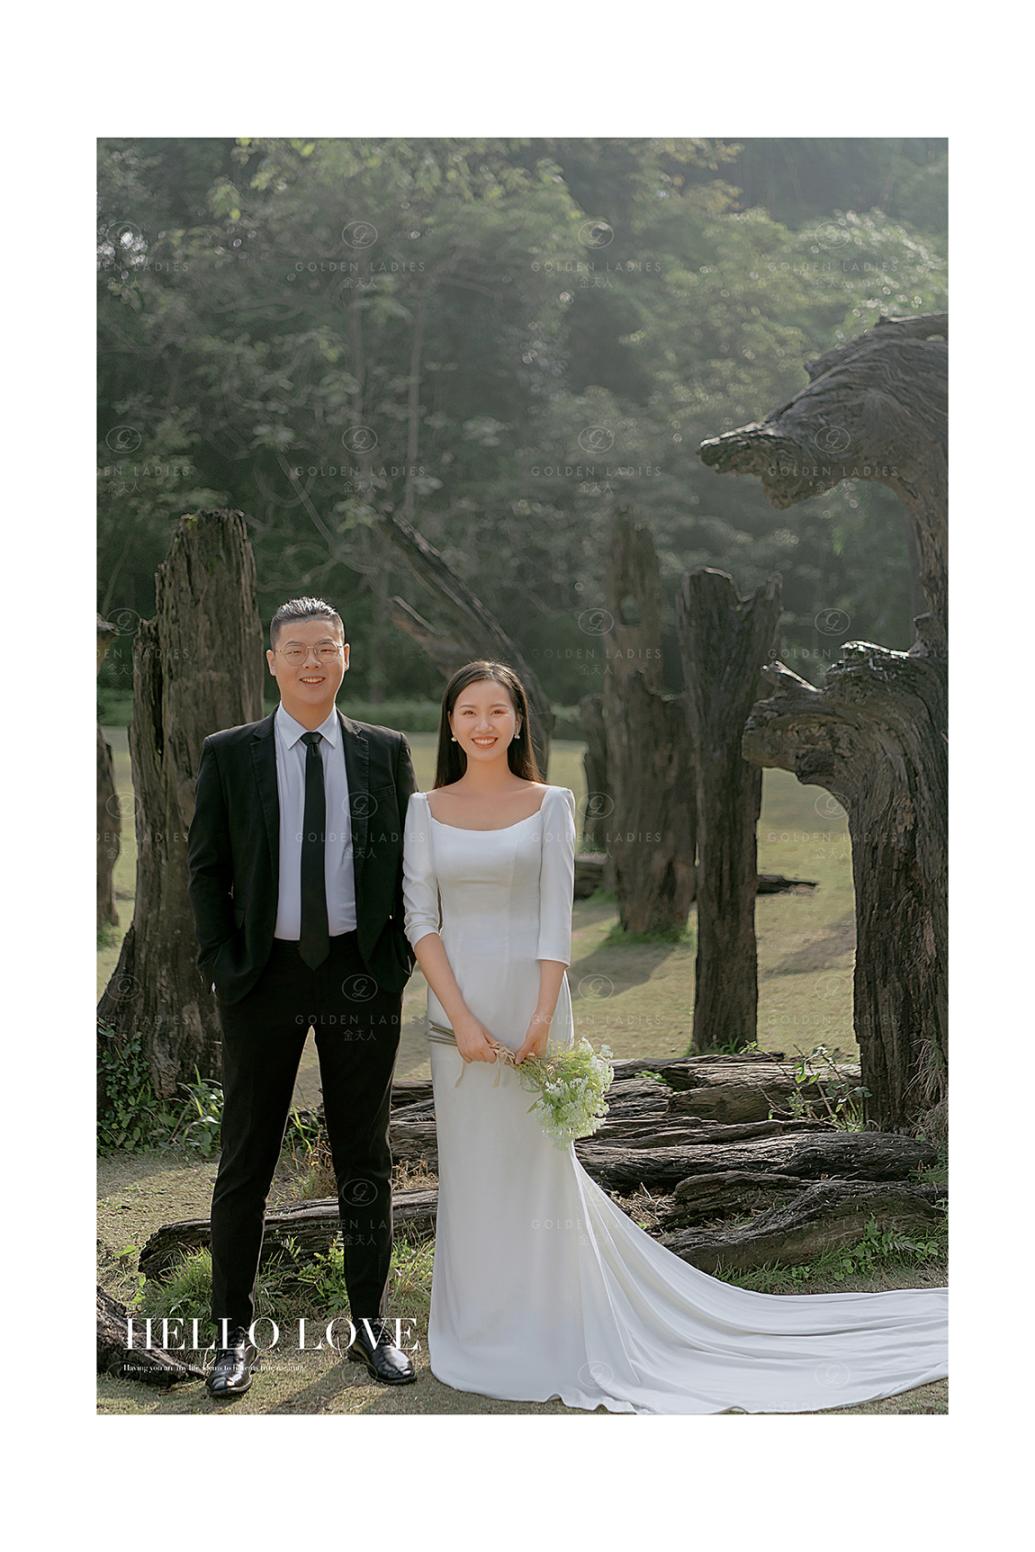 婚纱照教程分享丨在巨木阵如何将婚纱照拍出高级感?